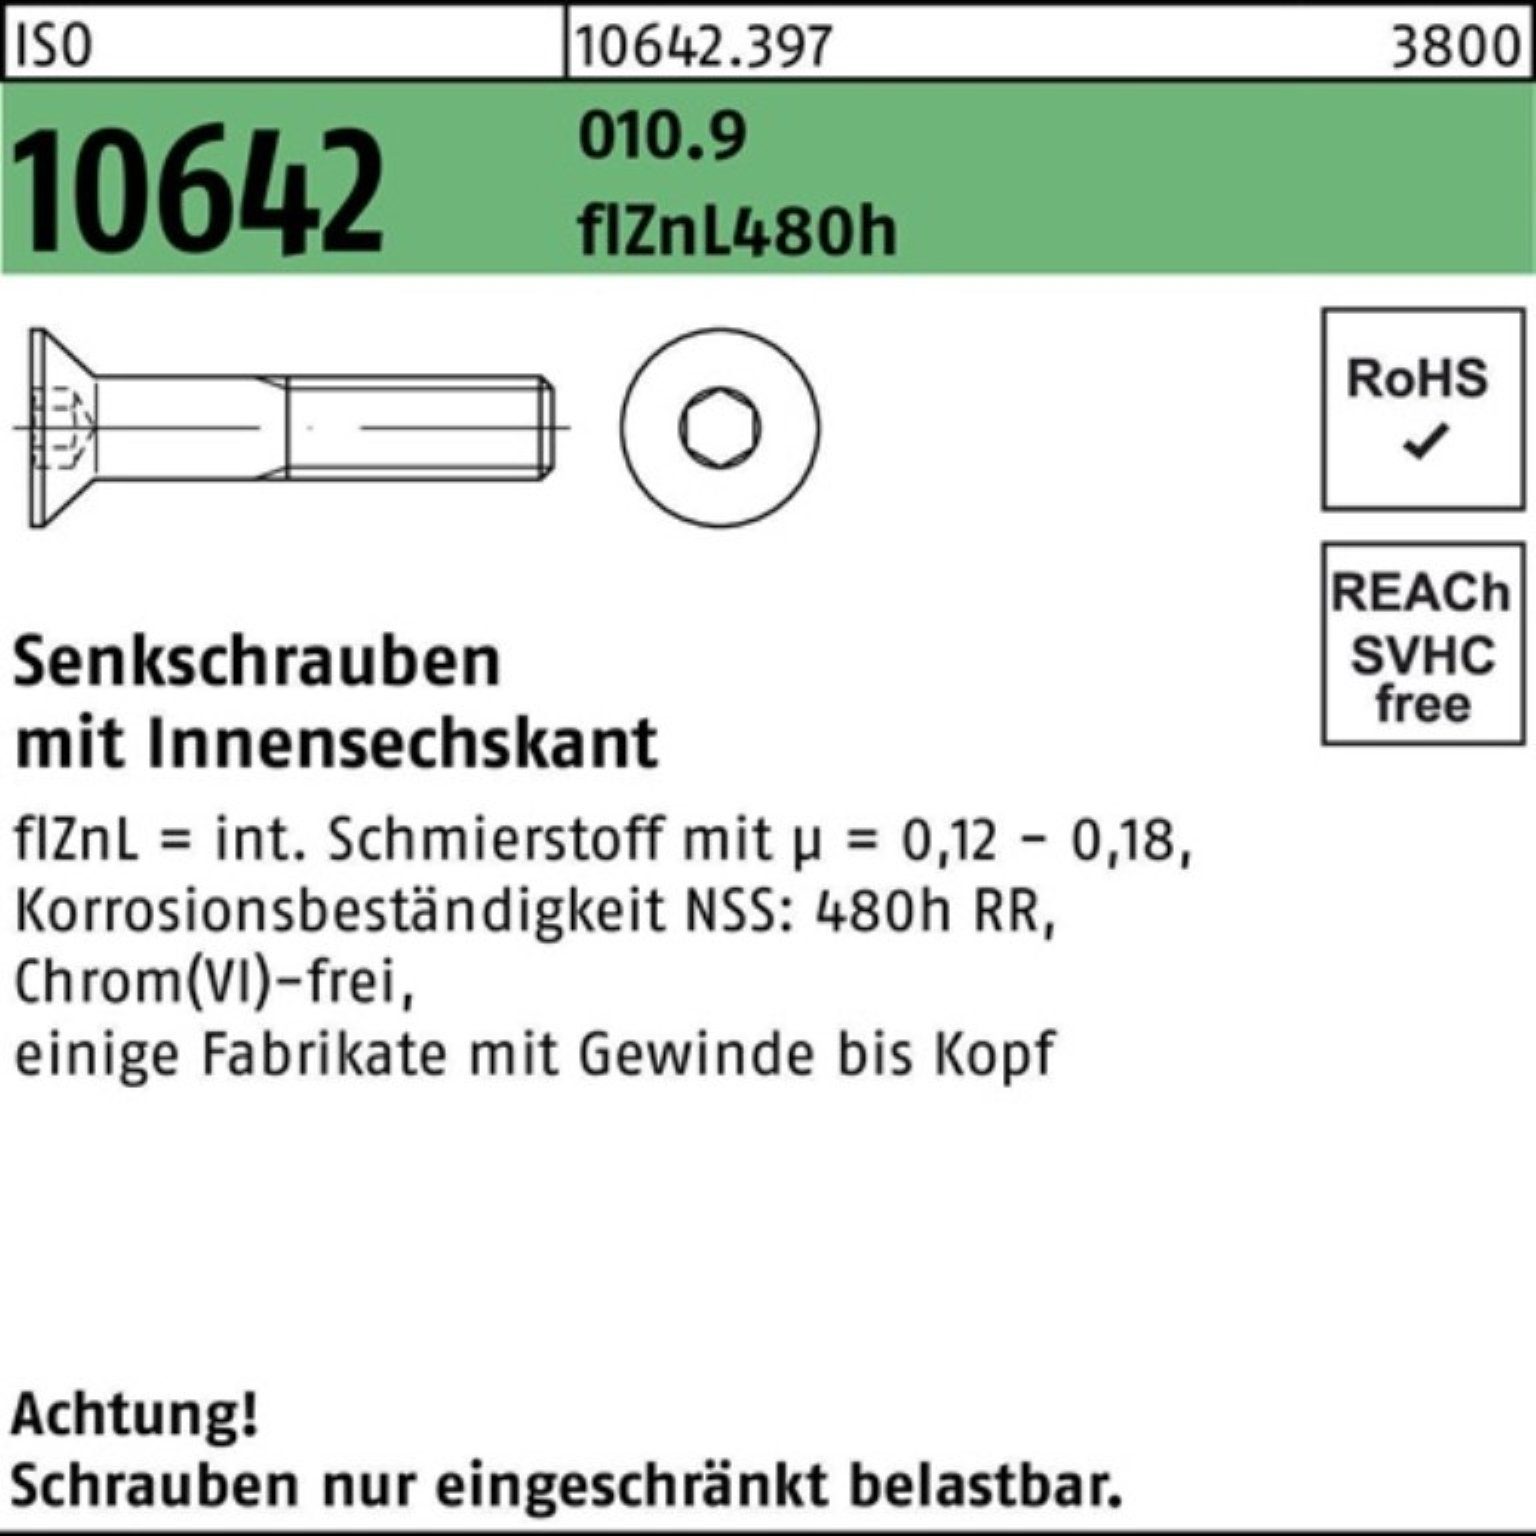 Reyher Senkschraube 100er Pack Senkschraube ISO 10642 Innen-6kt M10x35 010.9 flZnL 480h zi